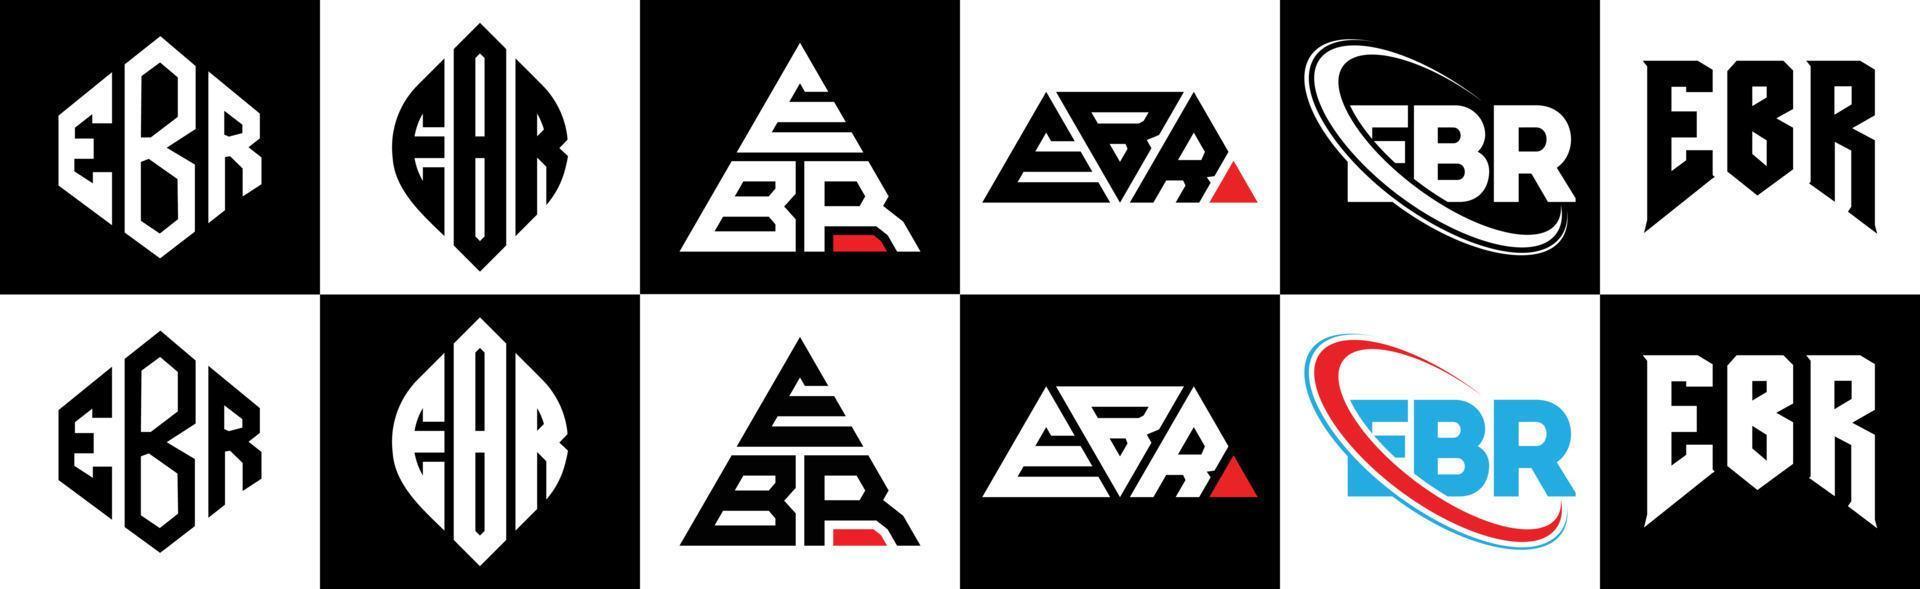 création de logo de lettre ebr en six styles. polygone ebr, cercle, triangle, hexagone, style plat et simple avec logo de lettre de variation de couleur noir et blanc dans un plan de travail. logo ebr minimaliste et classique vecteur